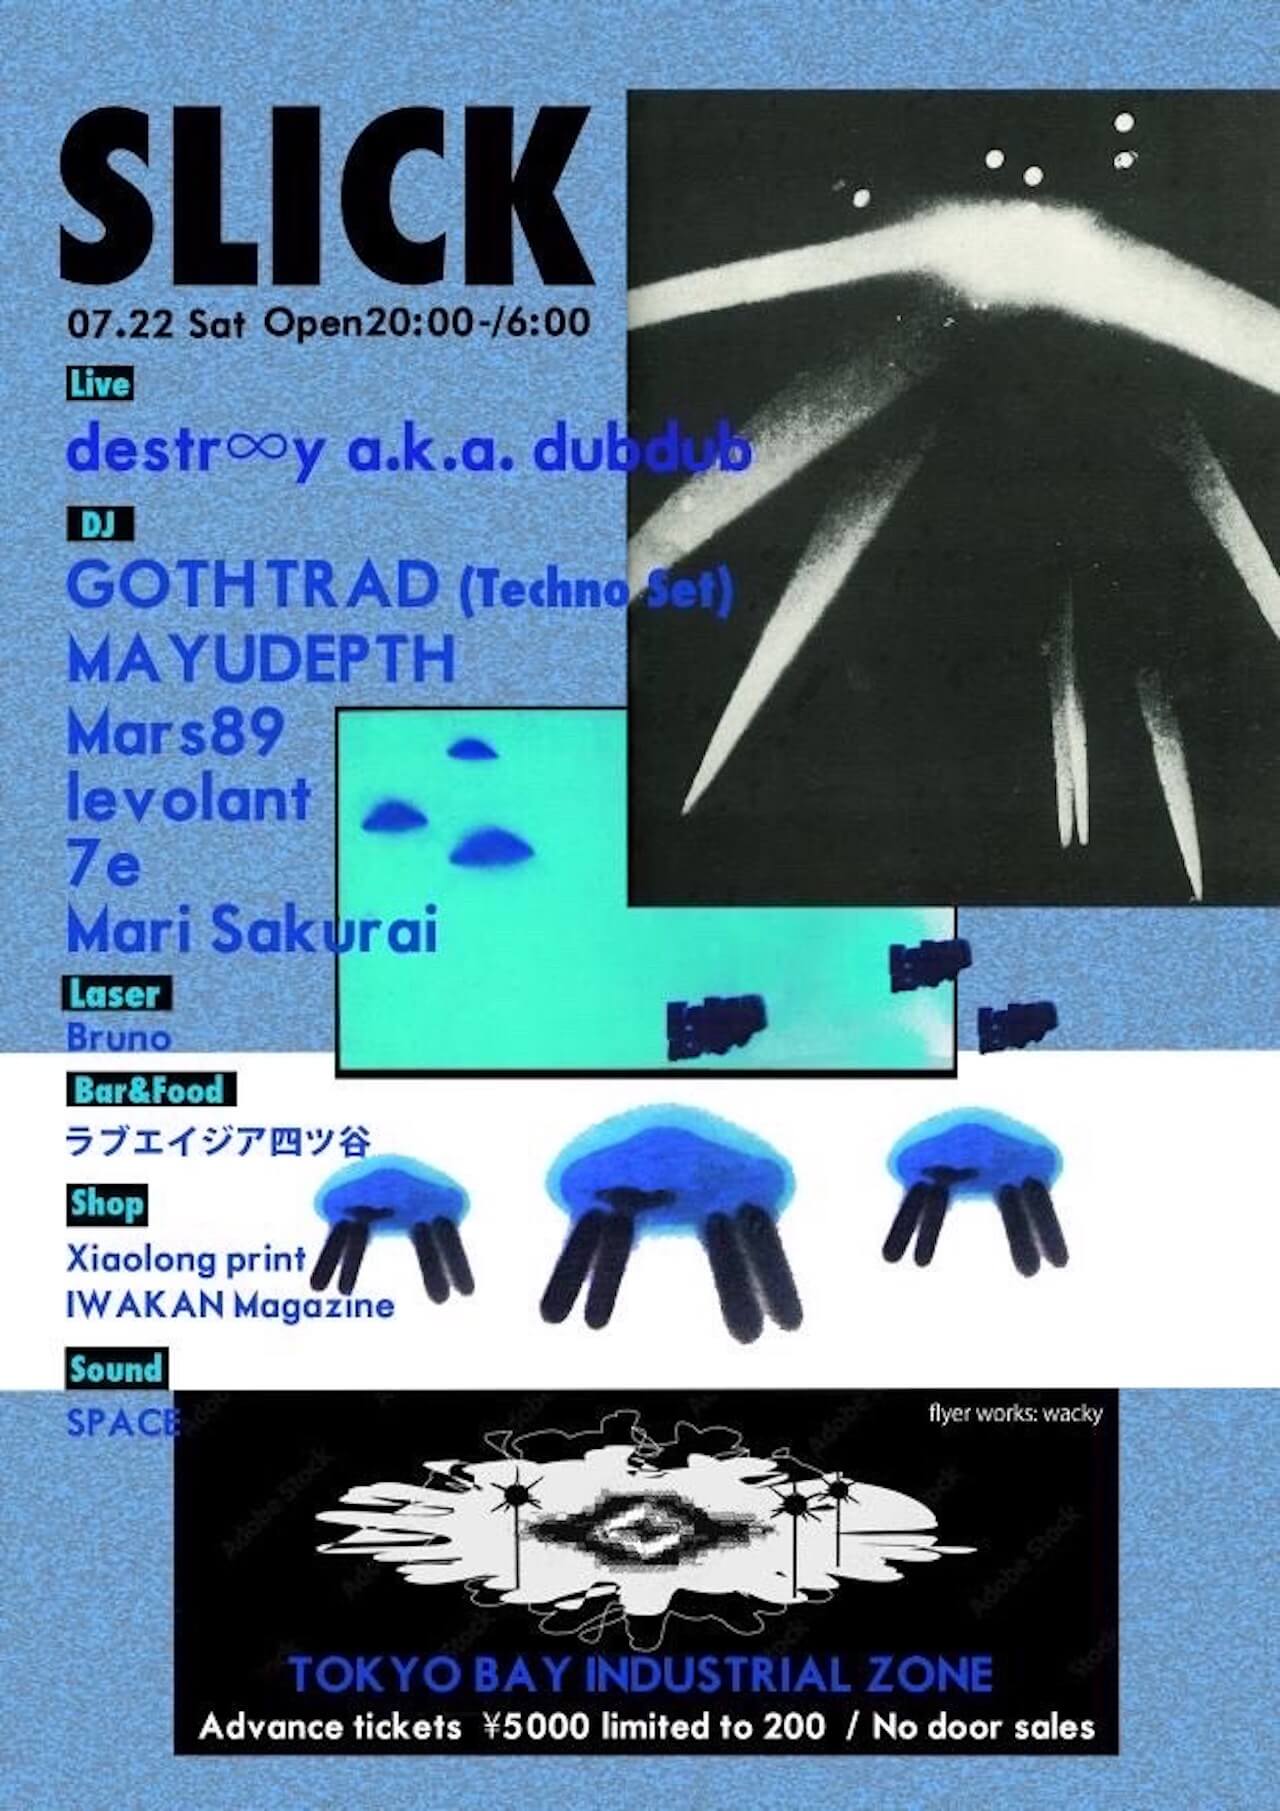 レイヴパーティー＜SLICK＞が7月22日に開催｜GOTH-TRAD、MAYUDEPTH、Mars89、levolant、destr∞y a.k.a. dubdub、7e、Mari Sakuraiら出演 music230719-slick